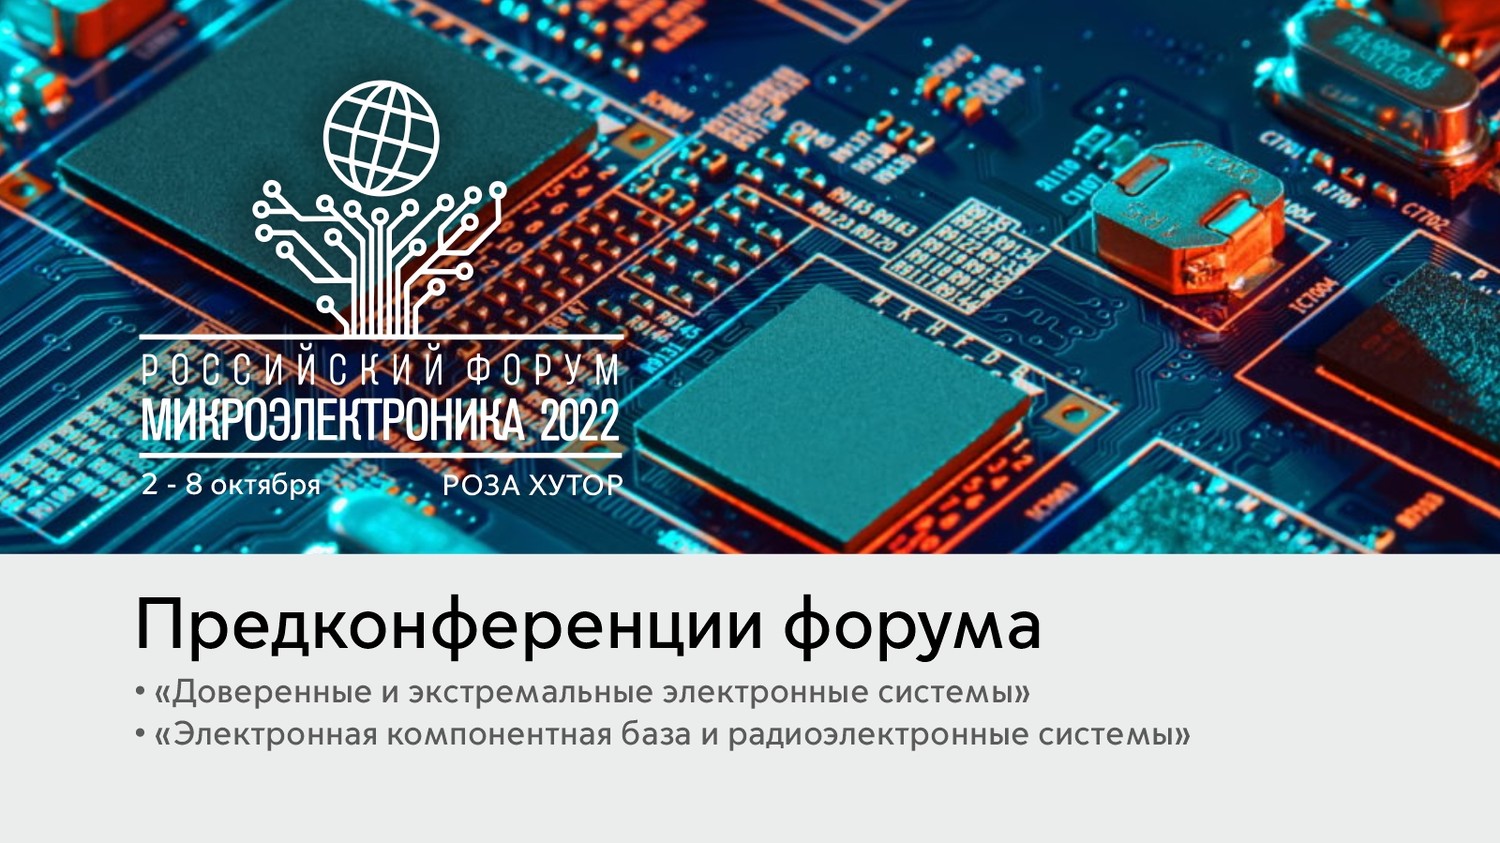 В сентябре 2022 года состоятся две предконференции Российского форума «Микроэлектроника 2022»